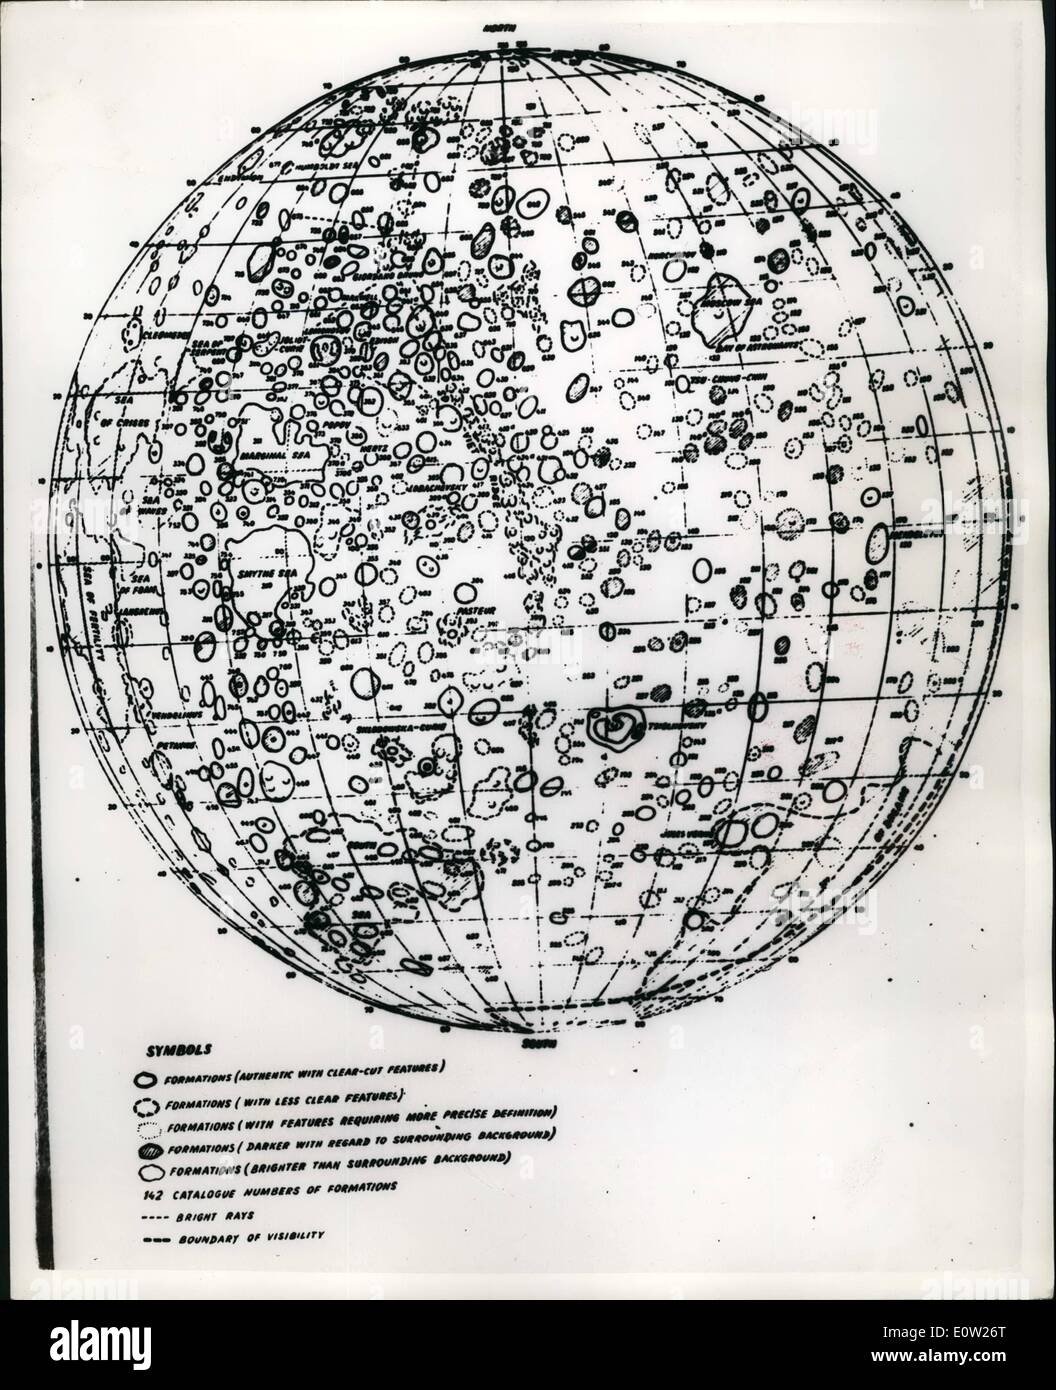 Le 12 décembre 1960 - Amazing plan de la face arrière de la lune. Vu pour la première fois en dehors de l'Union soviétique. C'est la première apparition hors de l'Union soviétique de la carte de la face arrière de la Lune. Il a été réalisé conjointement par l'Institut d'astronomie Sternberg et le Central Research Institute de Geodecy - Photographie aérienne et cartographie en janvier - avril 1960. Sur la base d'images relayées à partir de la station interplanétaire automatique soviétique le 7 octobre 1959. Le miridional bande entre 30 et 70 deg.. deg. de long a été compilé selon les cartes de la face visible de la lune. Banque D'Images